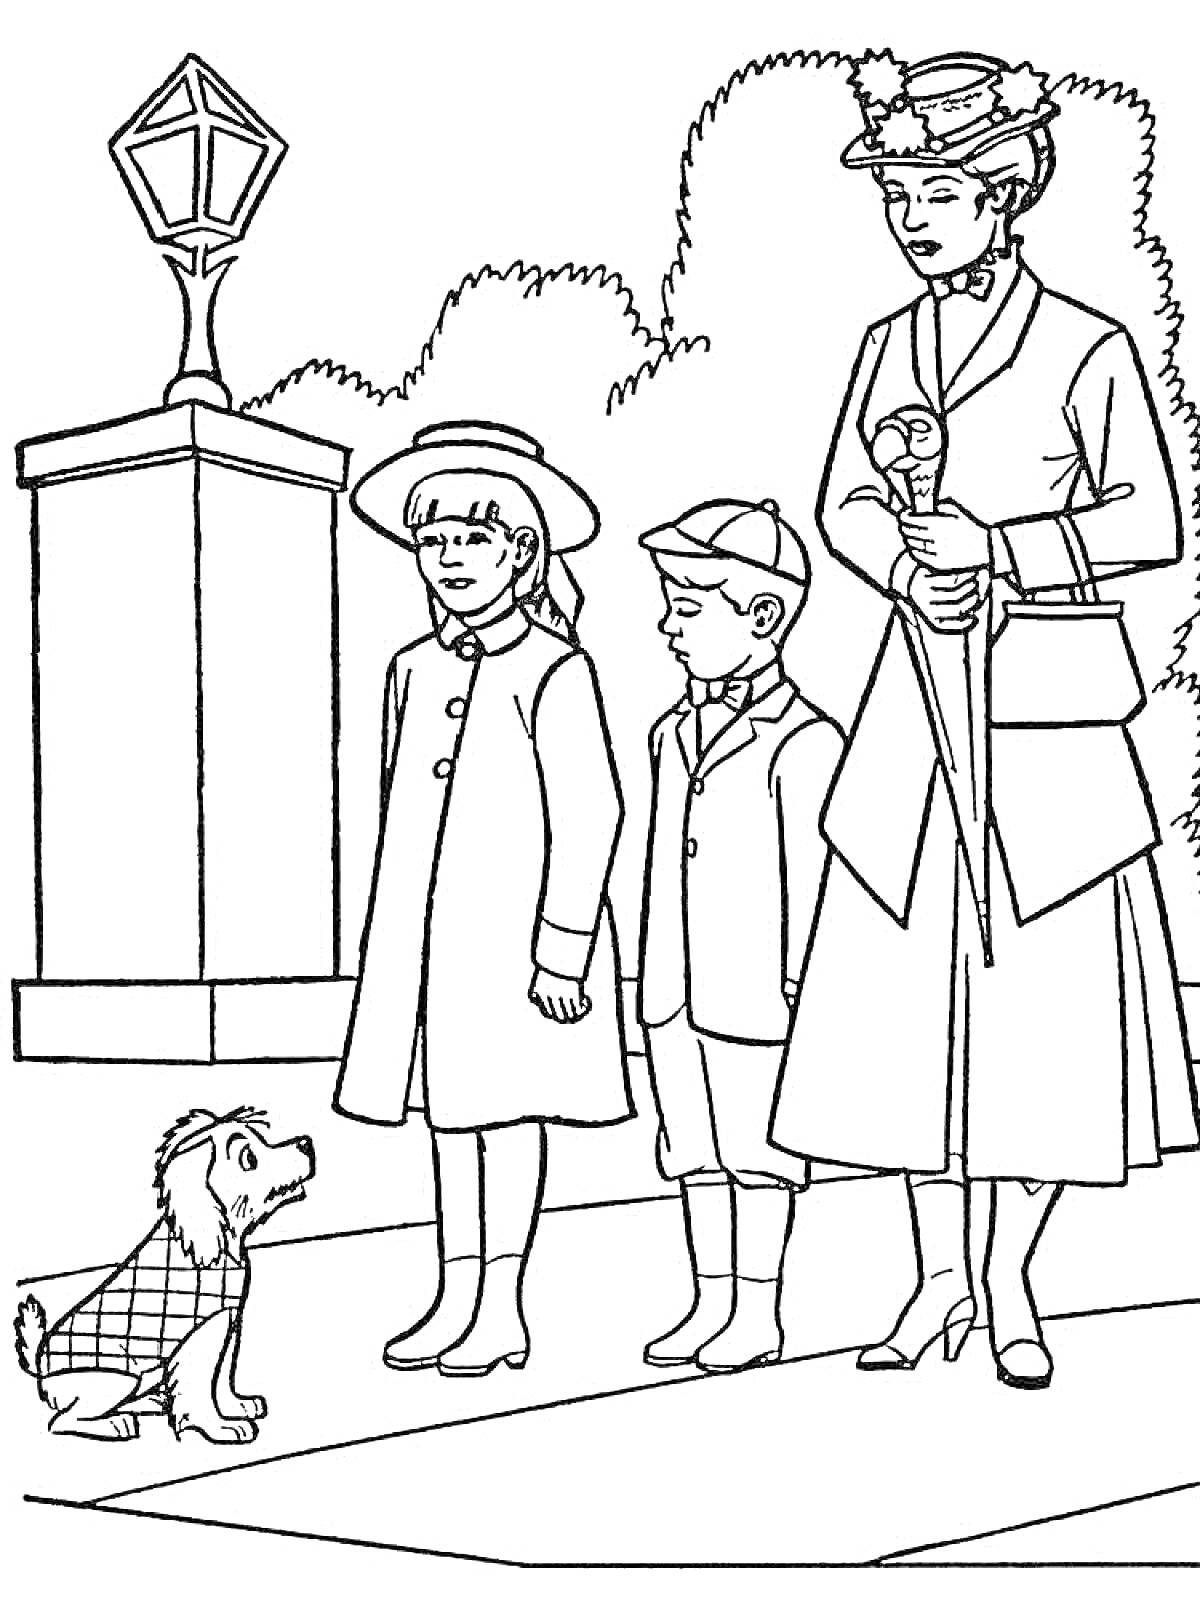 Раскраска Мэри Поппинс с двумя детьми и собакой возле фонаря